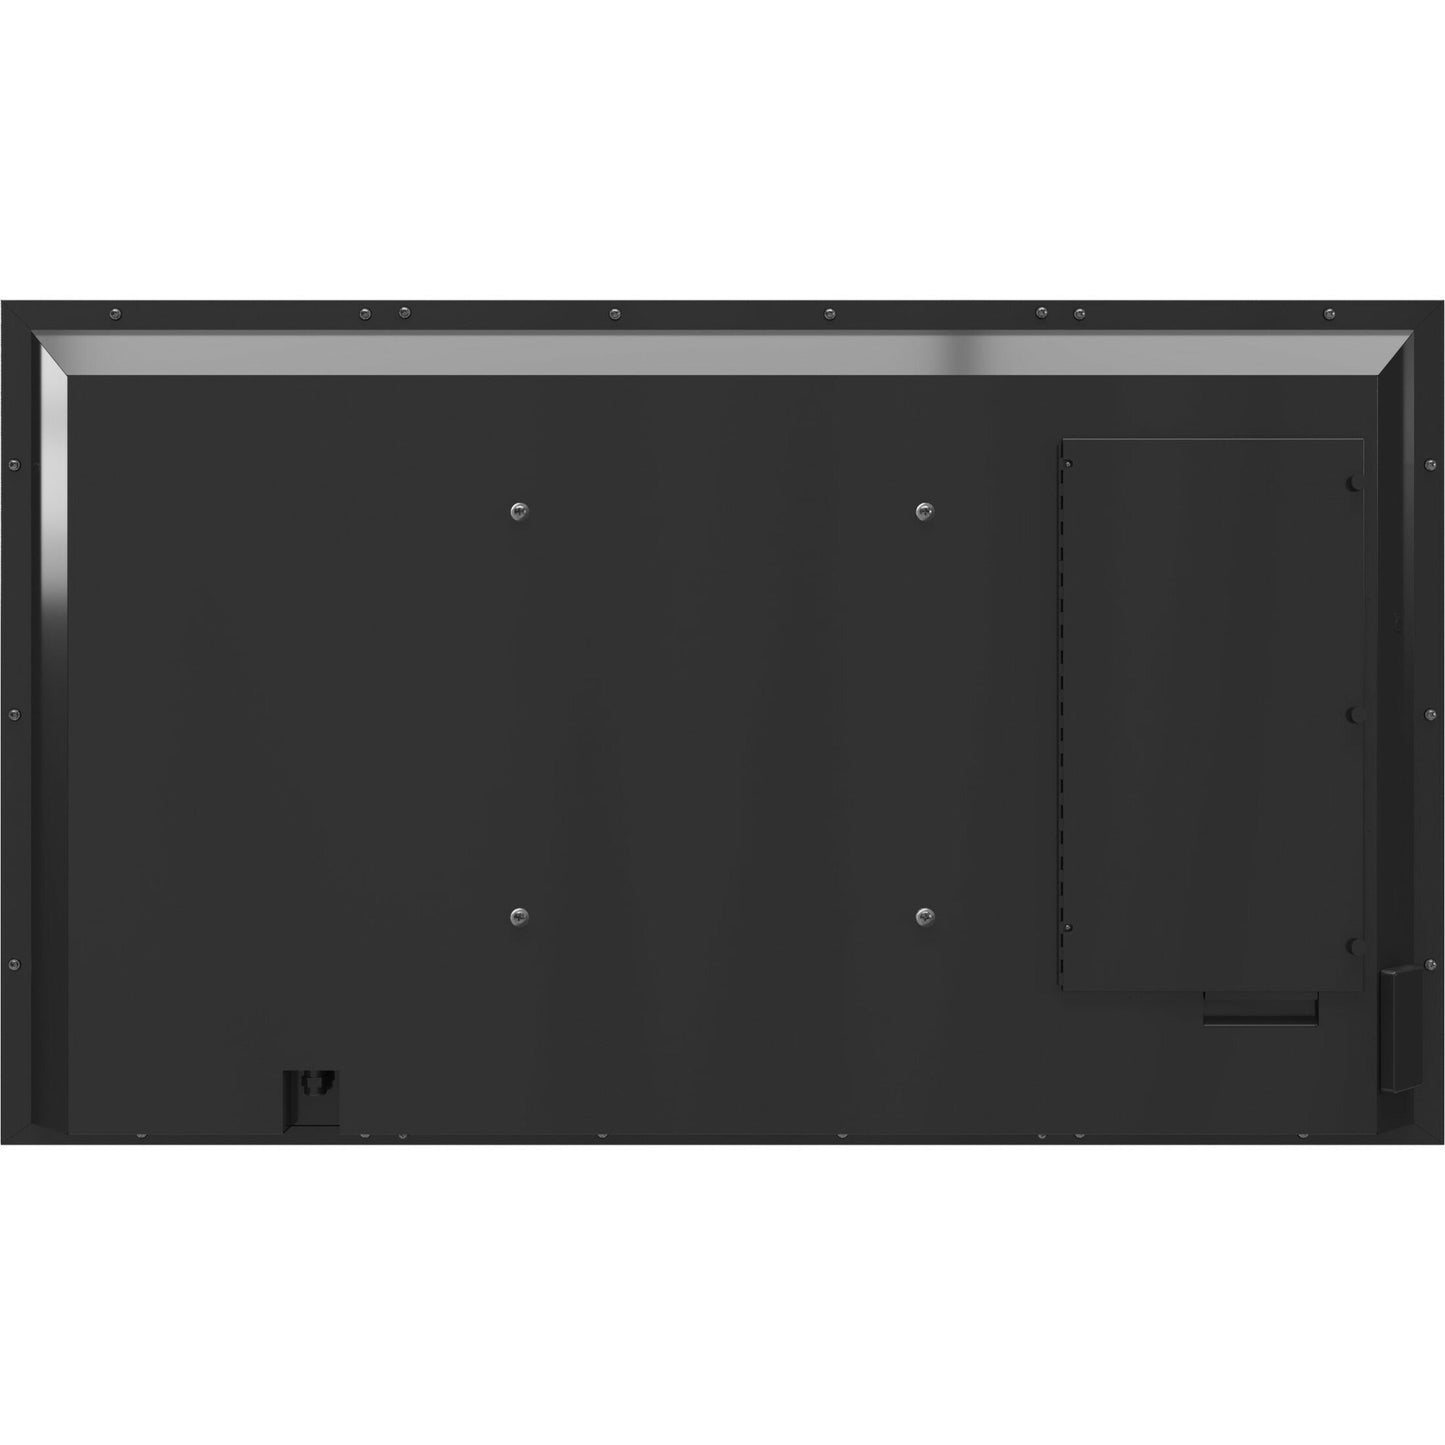 SunBriteTV Veranda 3 SB-V3-65-4KHDR-BL 65" Smart LED-LCD TV - 4K UHDTV - Black